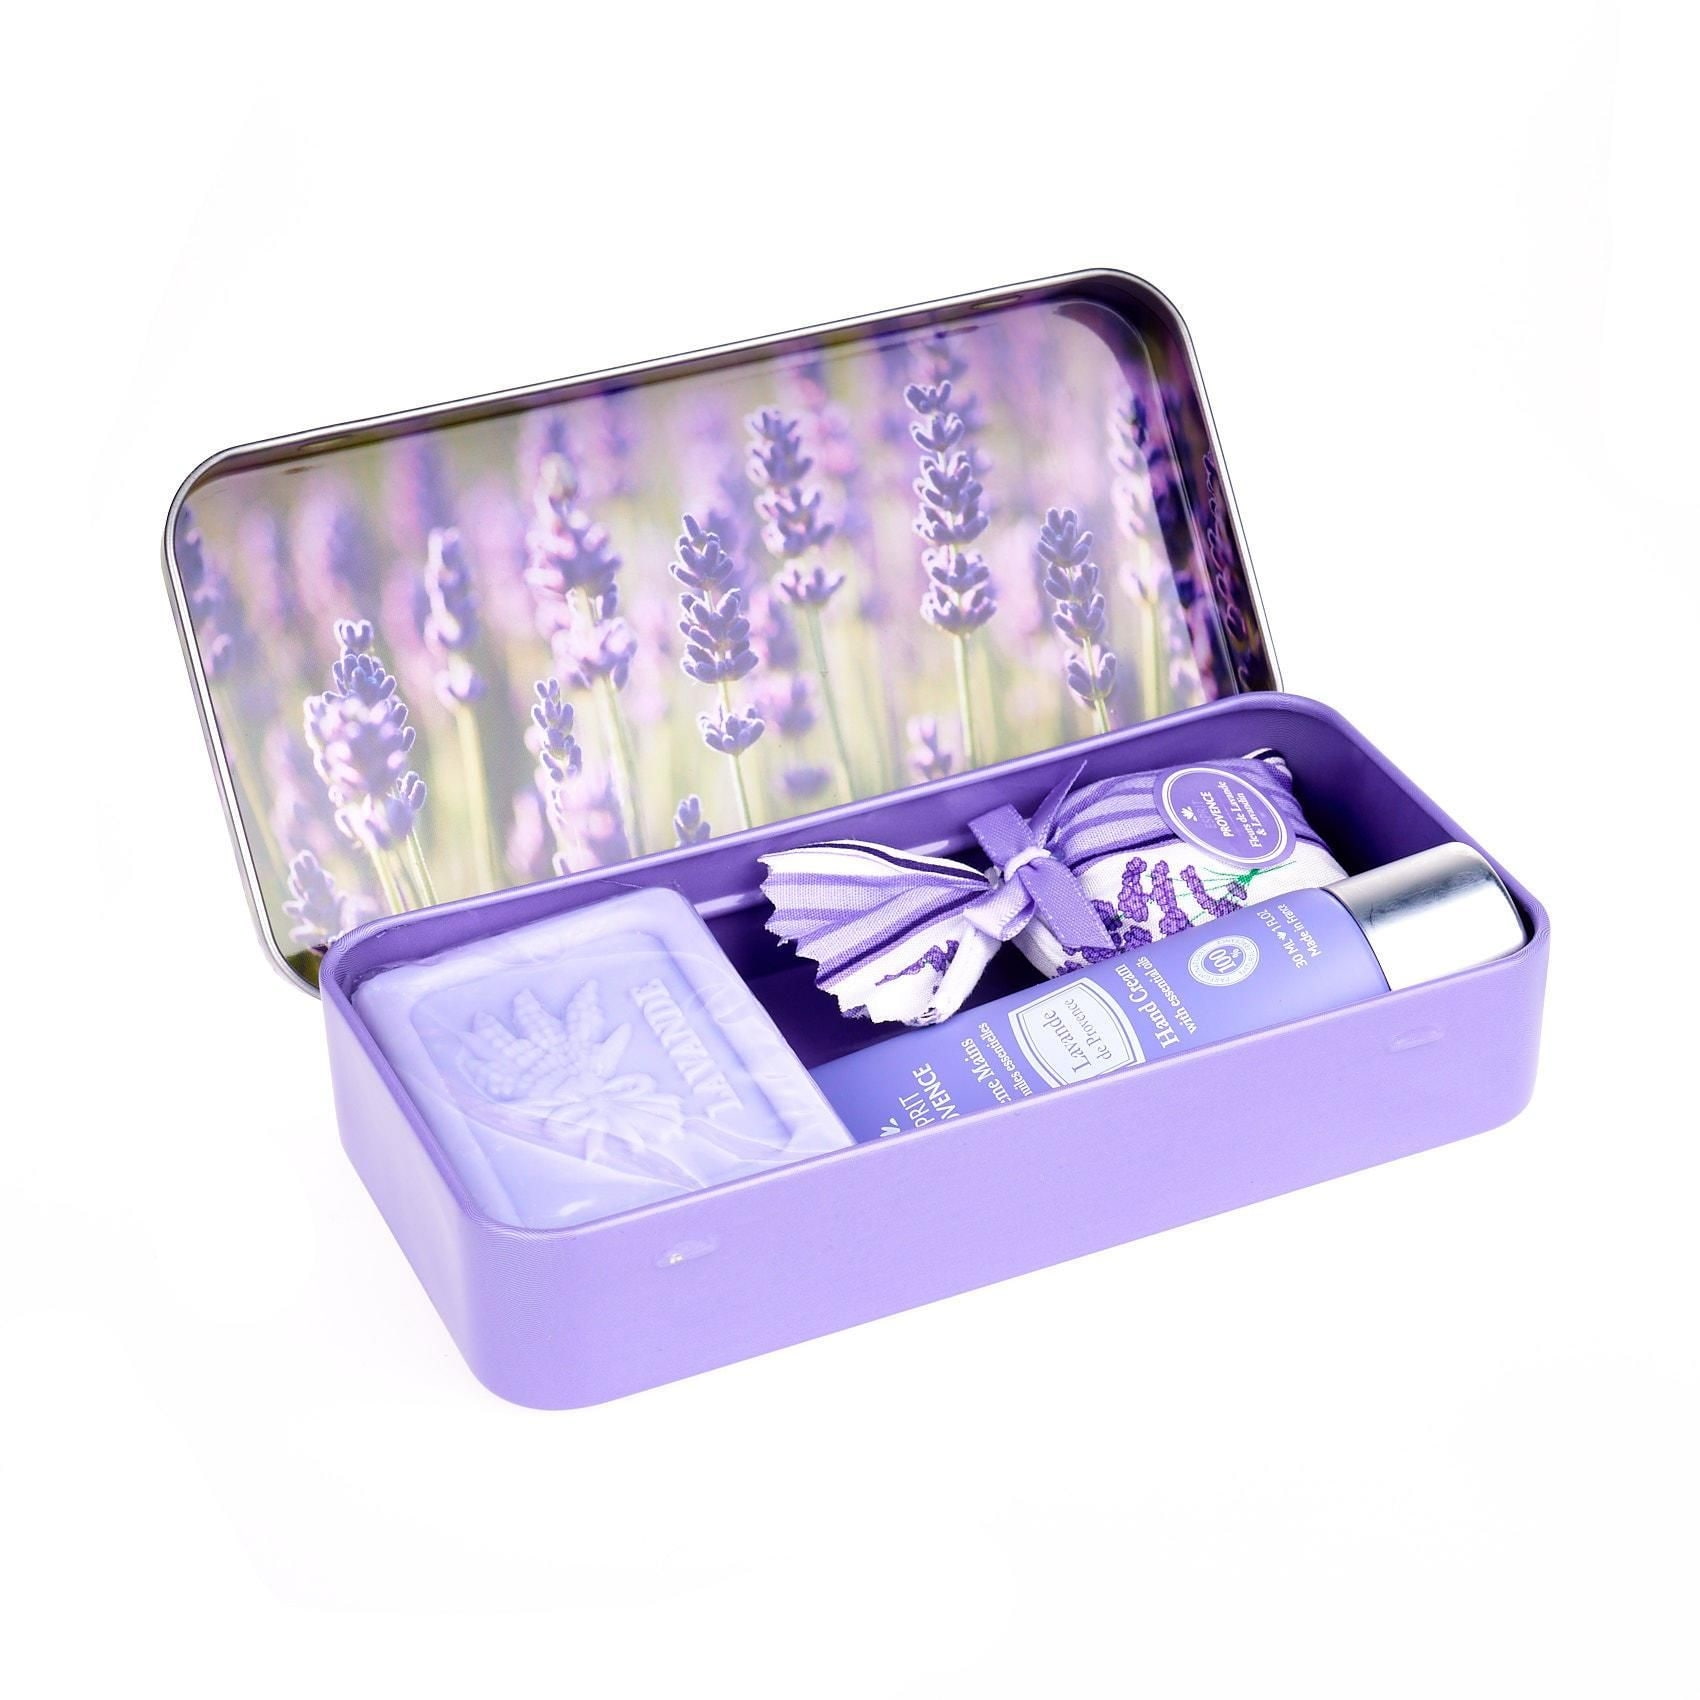 ESPRIT PROVENCE Dárkový set v krabičce - mýdlo a krém na ruce Lavande, fialová barva, kov - Esprit Provence Levandule krém na ruce 30 ml + mýdlo 60 g + levandulový pytlík dárková sada